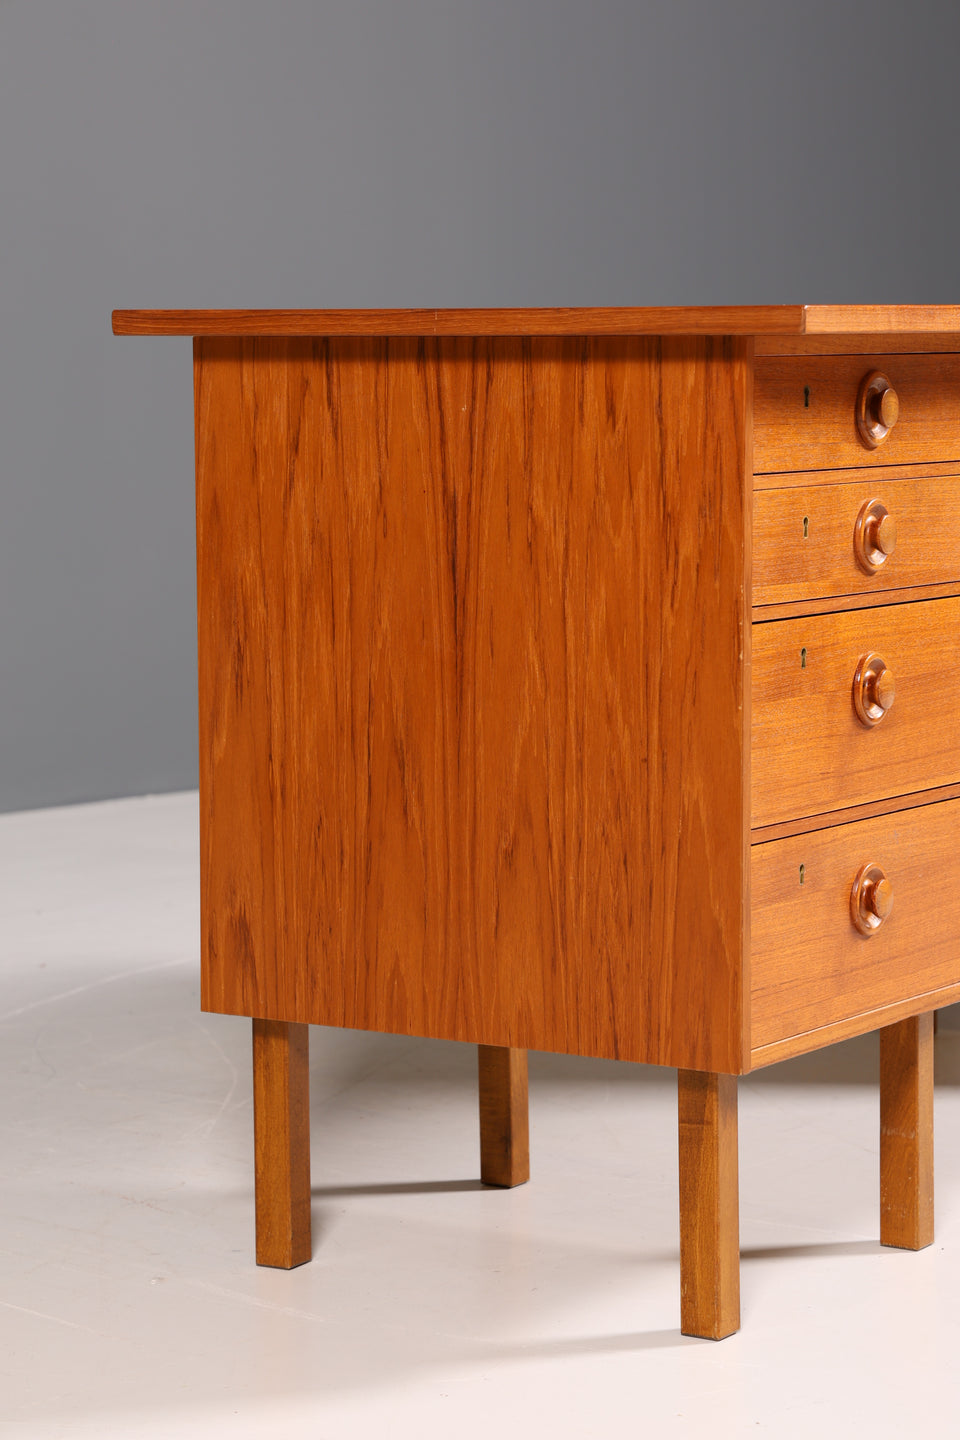 Wunderschöner Mid Century Schreibtisch Made in Denmark Teak Holz Tisch Bürotisch